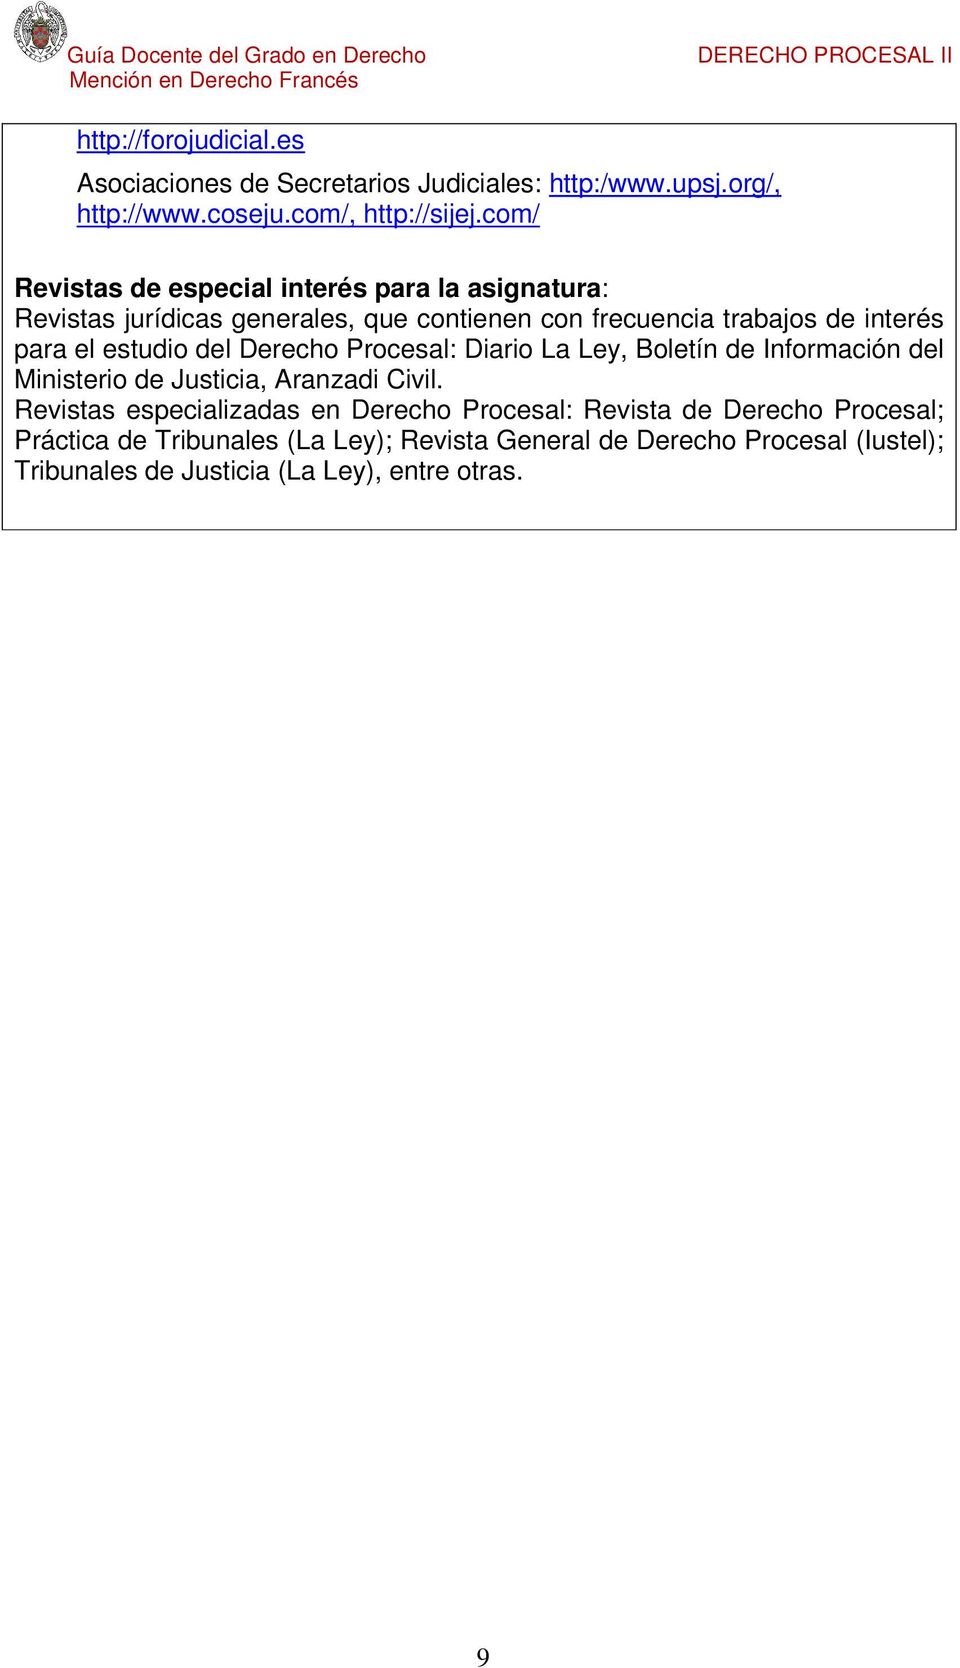 estudio del Derecho Procesal: Diario La Ley, Boletín de Información del Ministerio de Justicia, Aranzadi Civil.